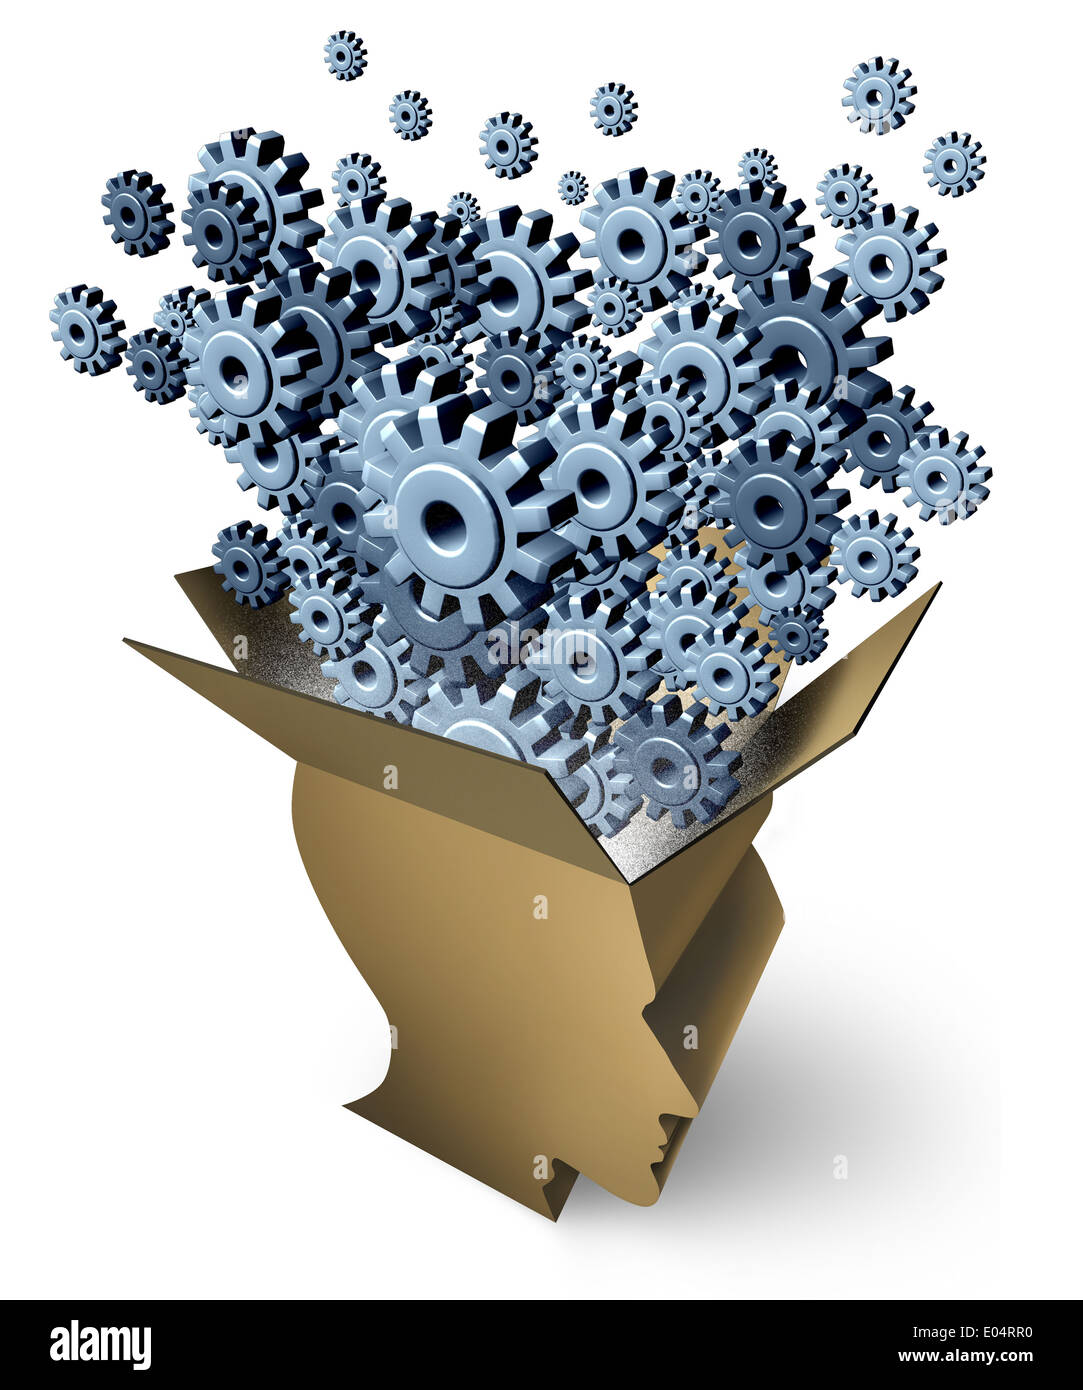 Gehirnfunktion und außerhalb der Box denken als eine Kartonverpackung in Form eines menschlichen Kopfes mit Getriebe und Zahnräder entwickelt sich aus einer Stockfoto